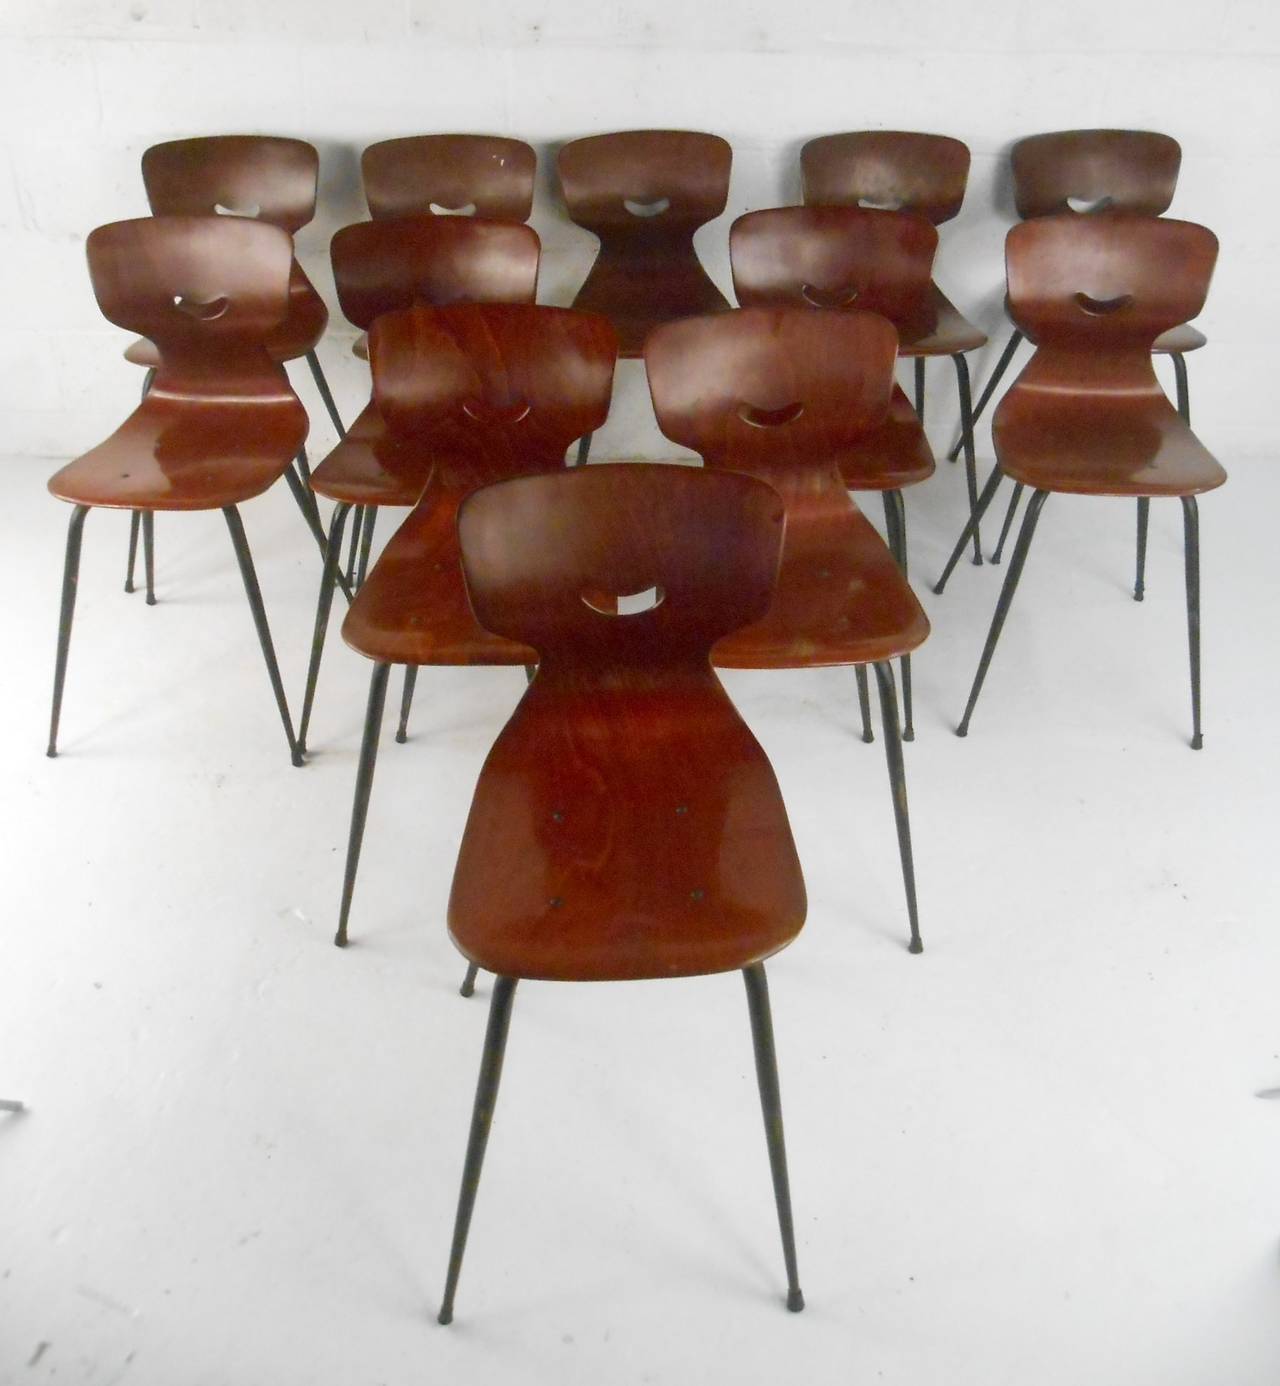 Magnifiques chaises moulées de force industrielle conçues par Adam Stegner. Fabriqué à partir de solides sièges en bois de pin (le bois de pin est un bois comprimé laminé à haute densité, avec un soutien orthopédique du bassin et du dos sans